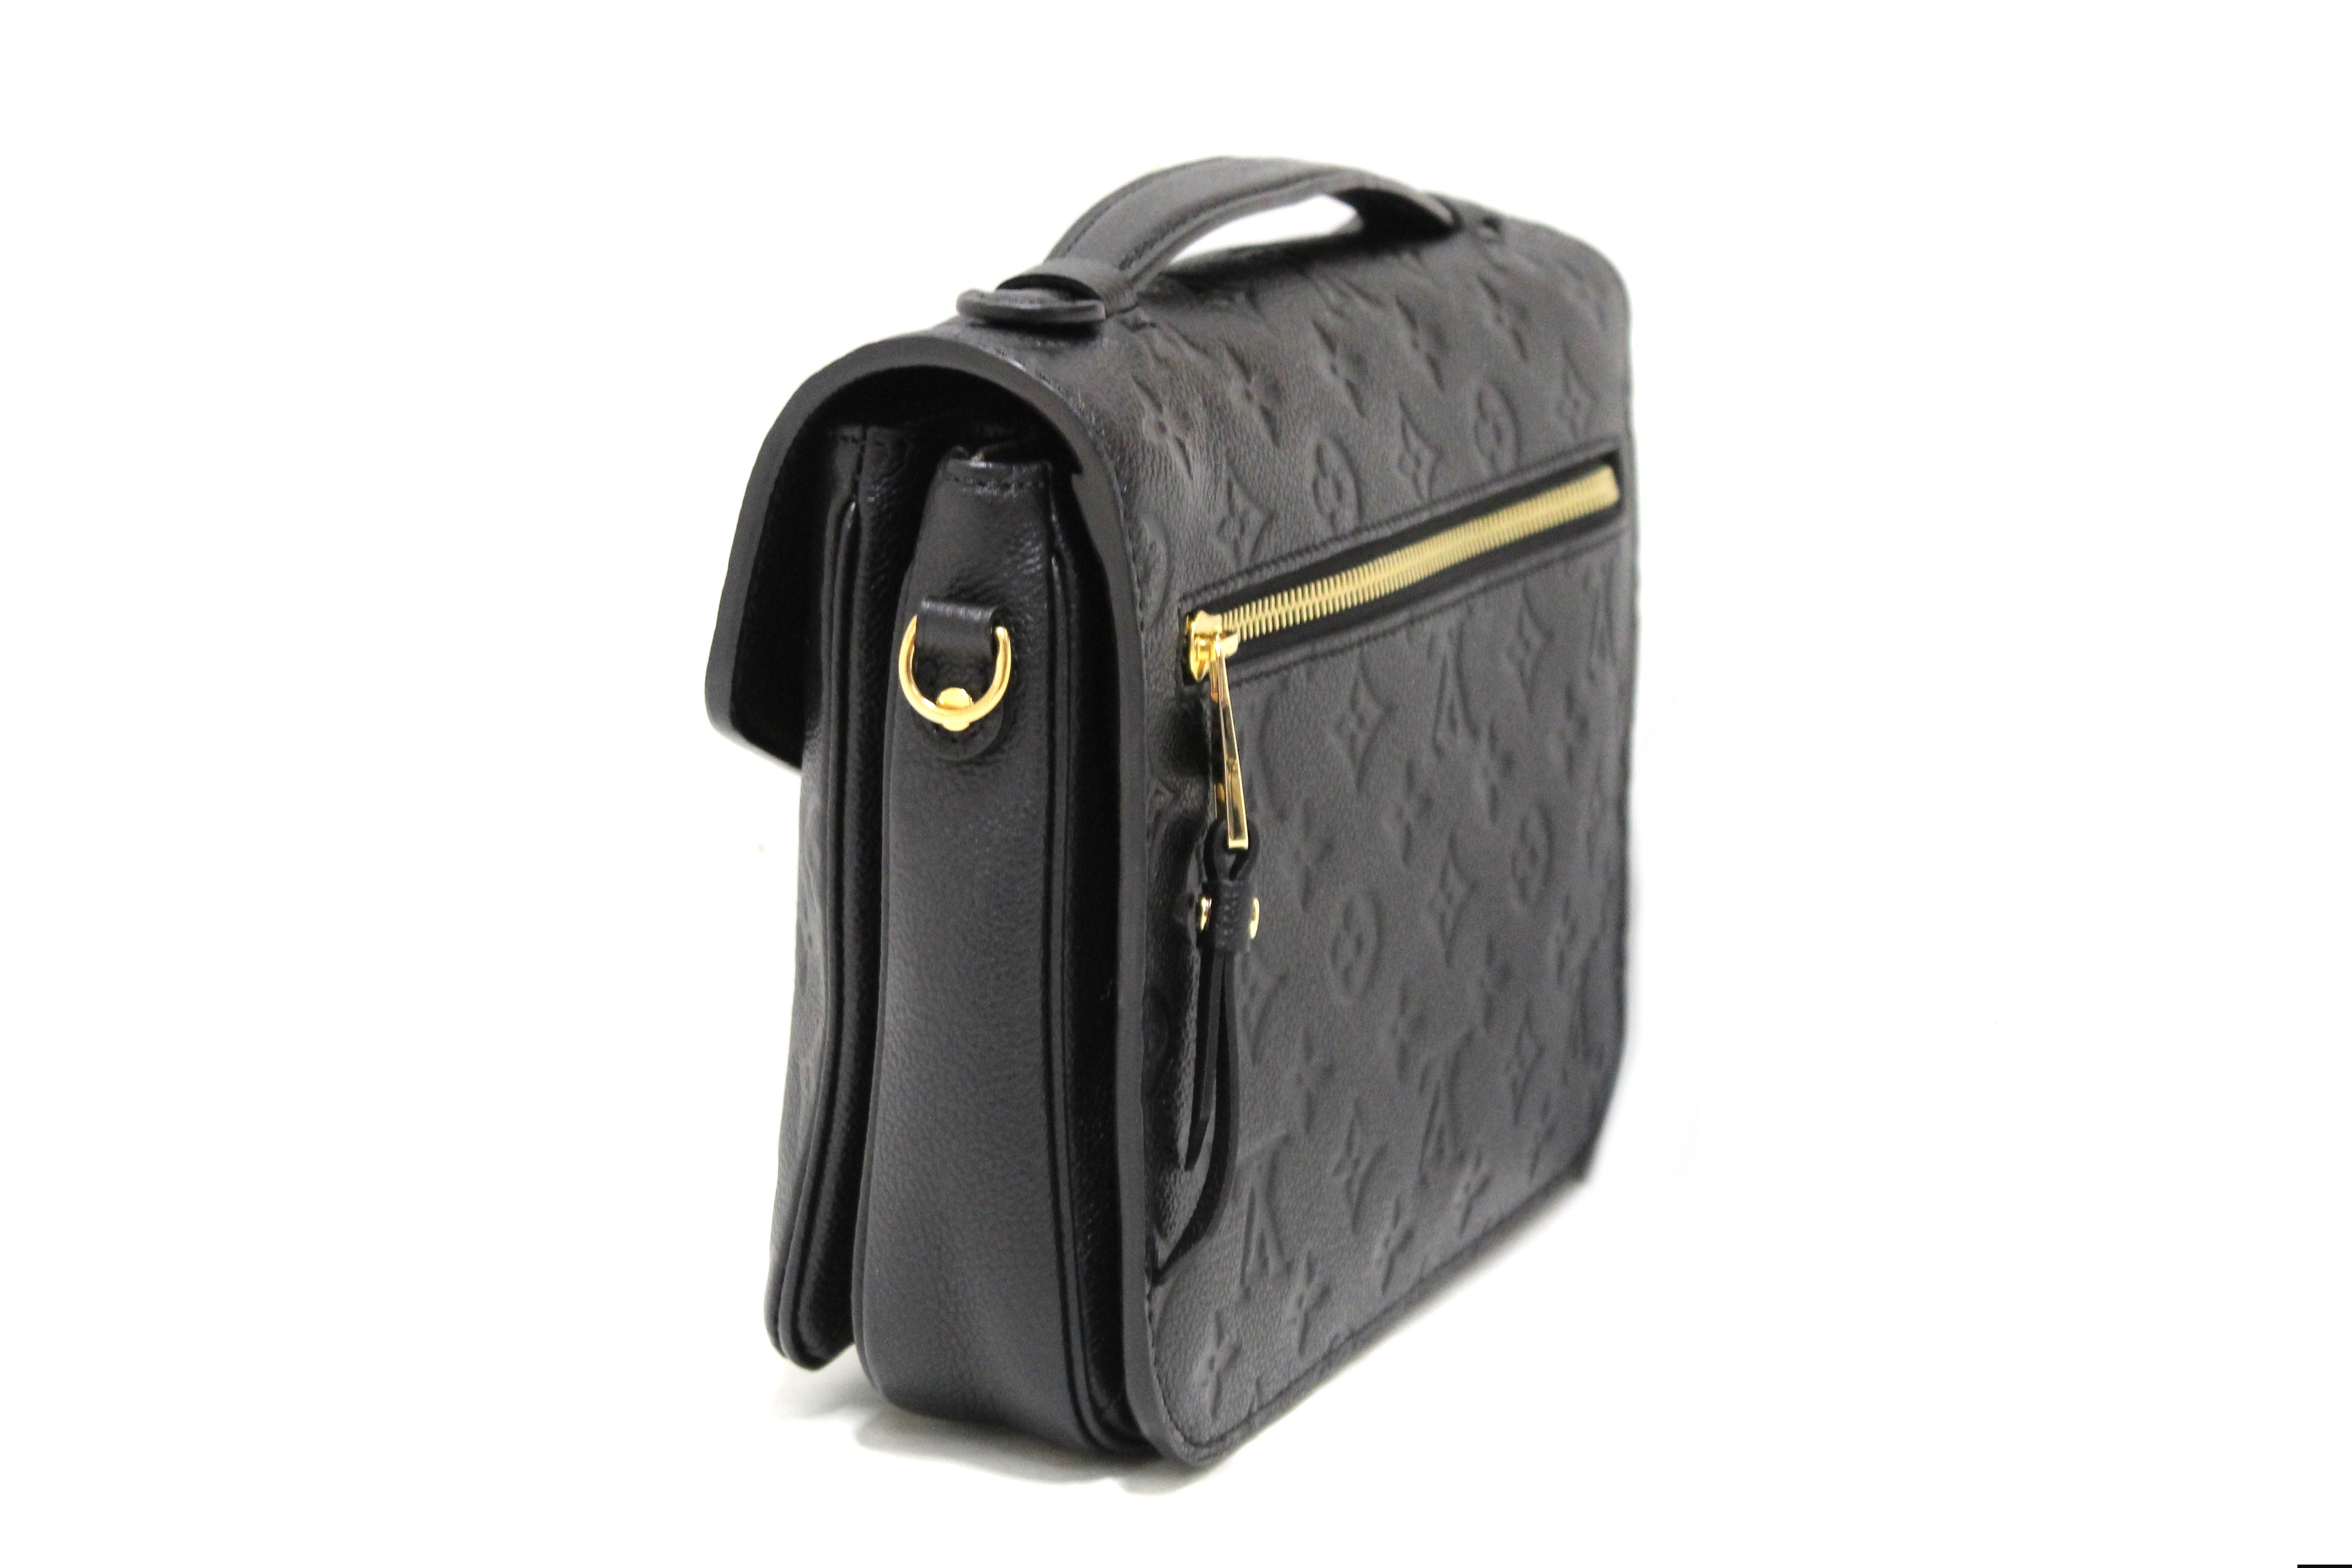 Authentic Louis Vuitton Black Monogram Empreinte Leather Metis Pochette Messenger Bag